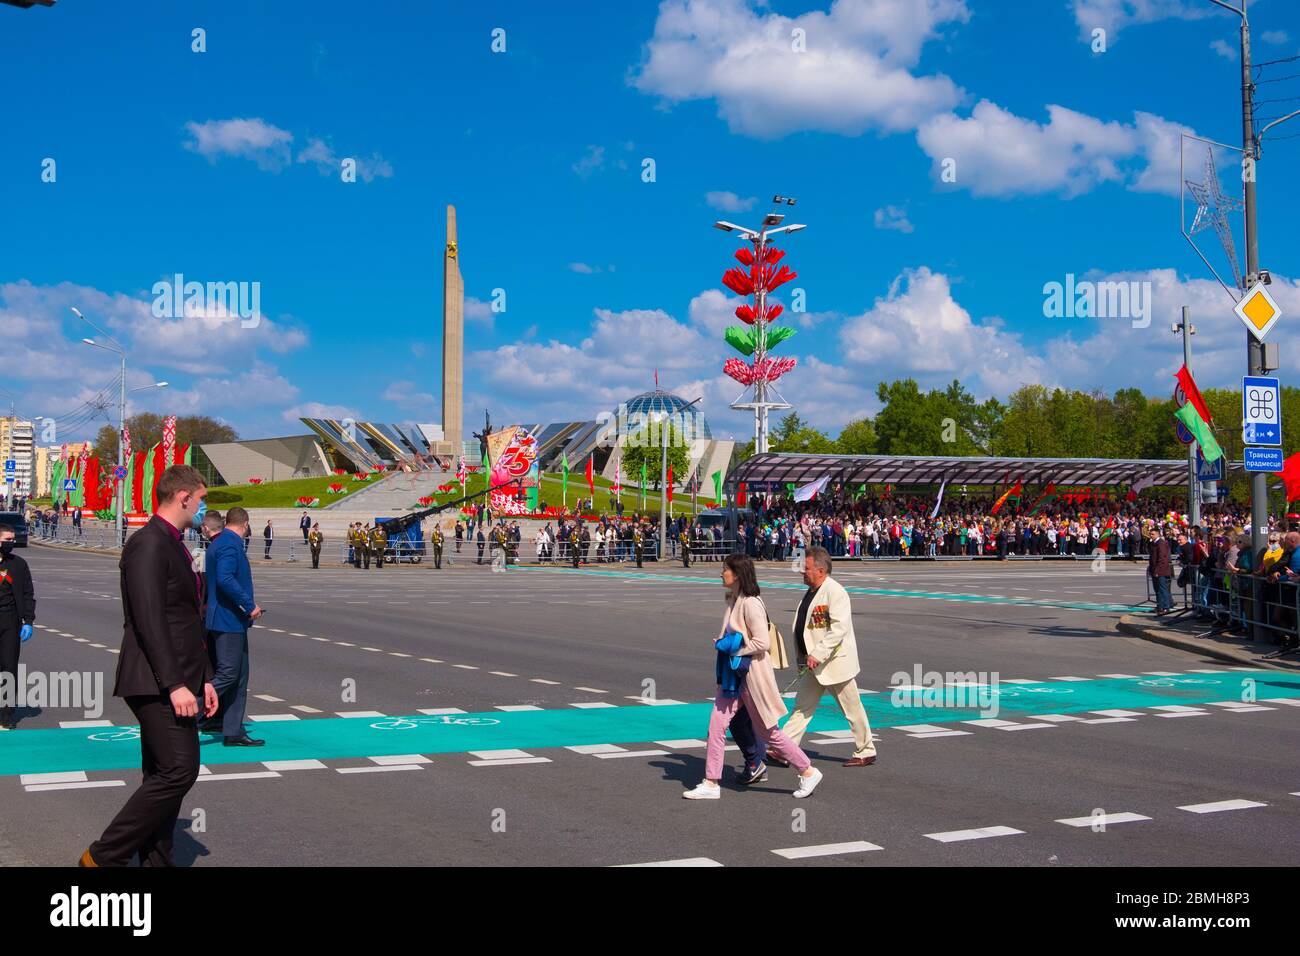 Minsk, Bielorussia - 9 maggio 2020: Parata militare per la celebrazione del 75° anniversario della Vittoria nella Grande Guerra Patriottica. Vittoria del giorno 9 maggio Foto Stock